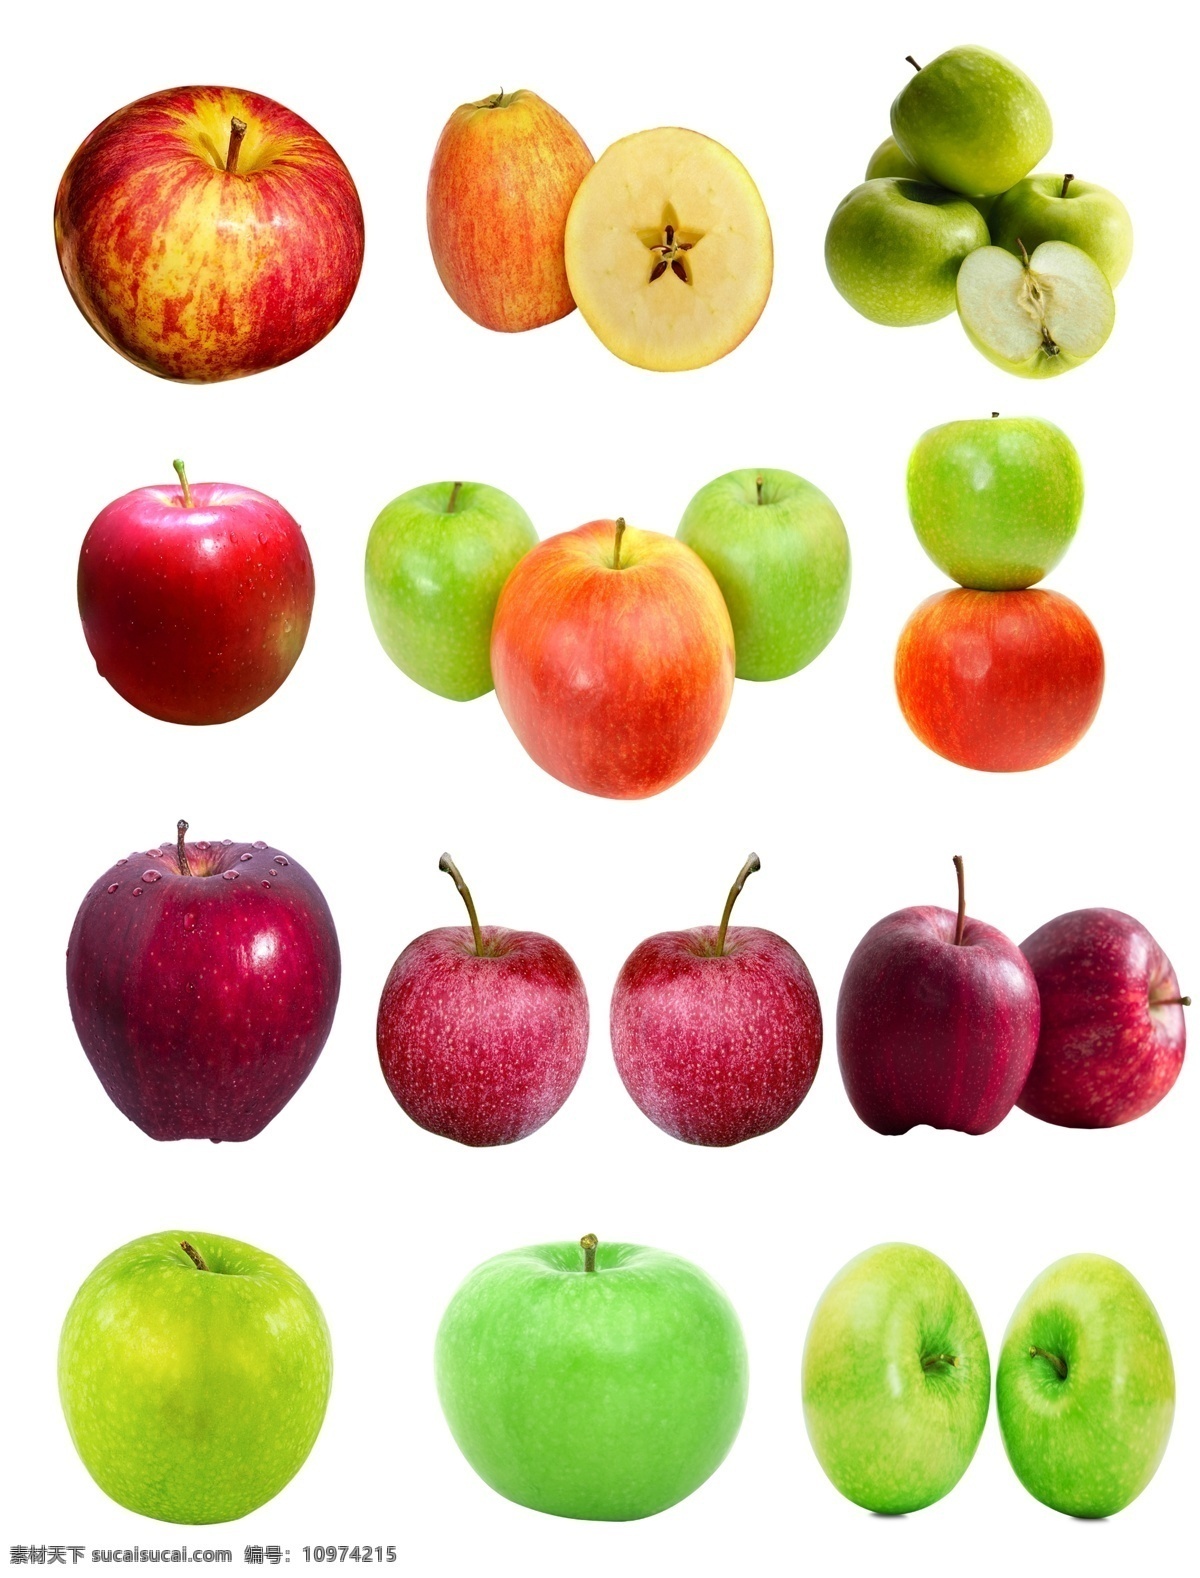 苹果素材图片 苹果 红苹果 青苹果 切开的苹果 蛇果 国光苹果 免扣素材